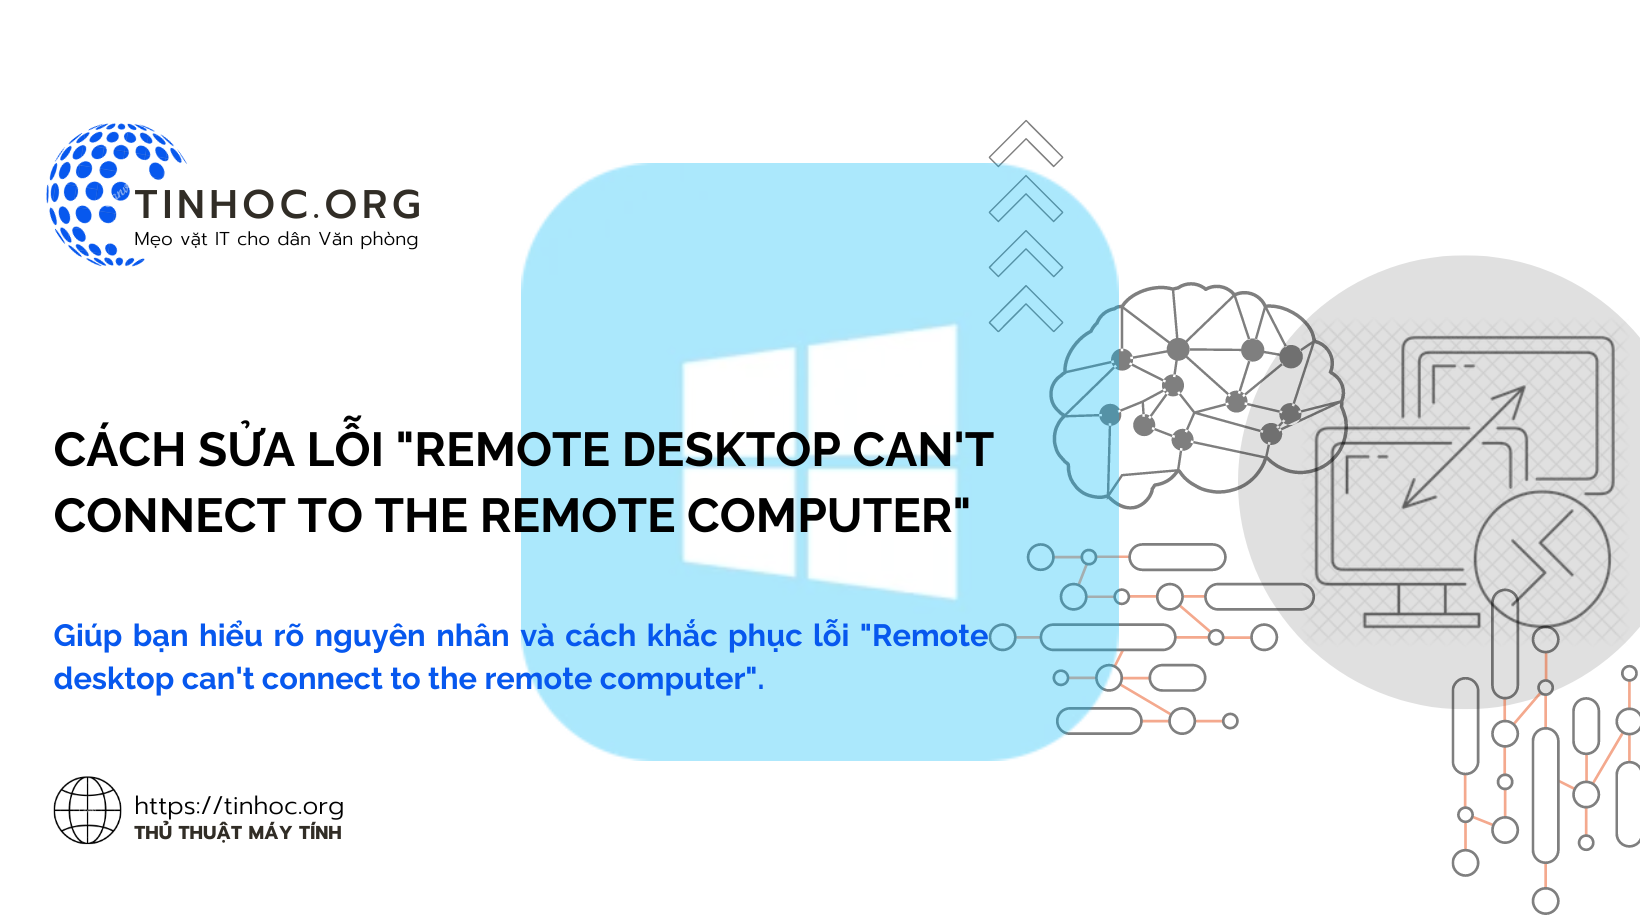 Giúp bạn hiểu rõ nguyên nhân và cách khắc phục lỗi "Remote desktop can't connect to the remote computer".